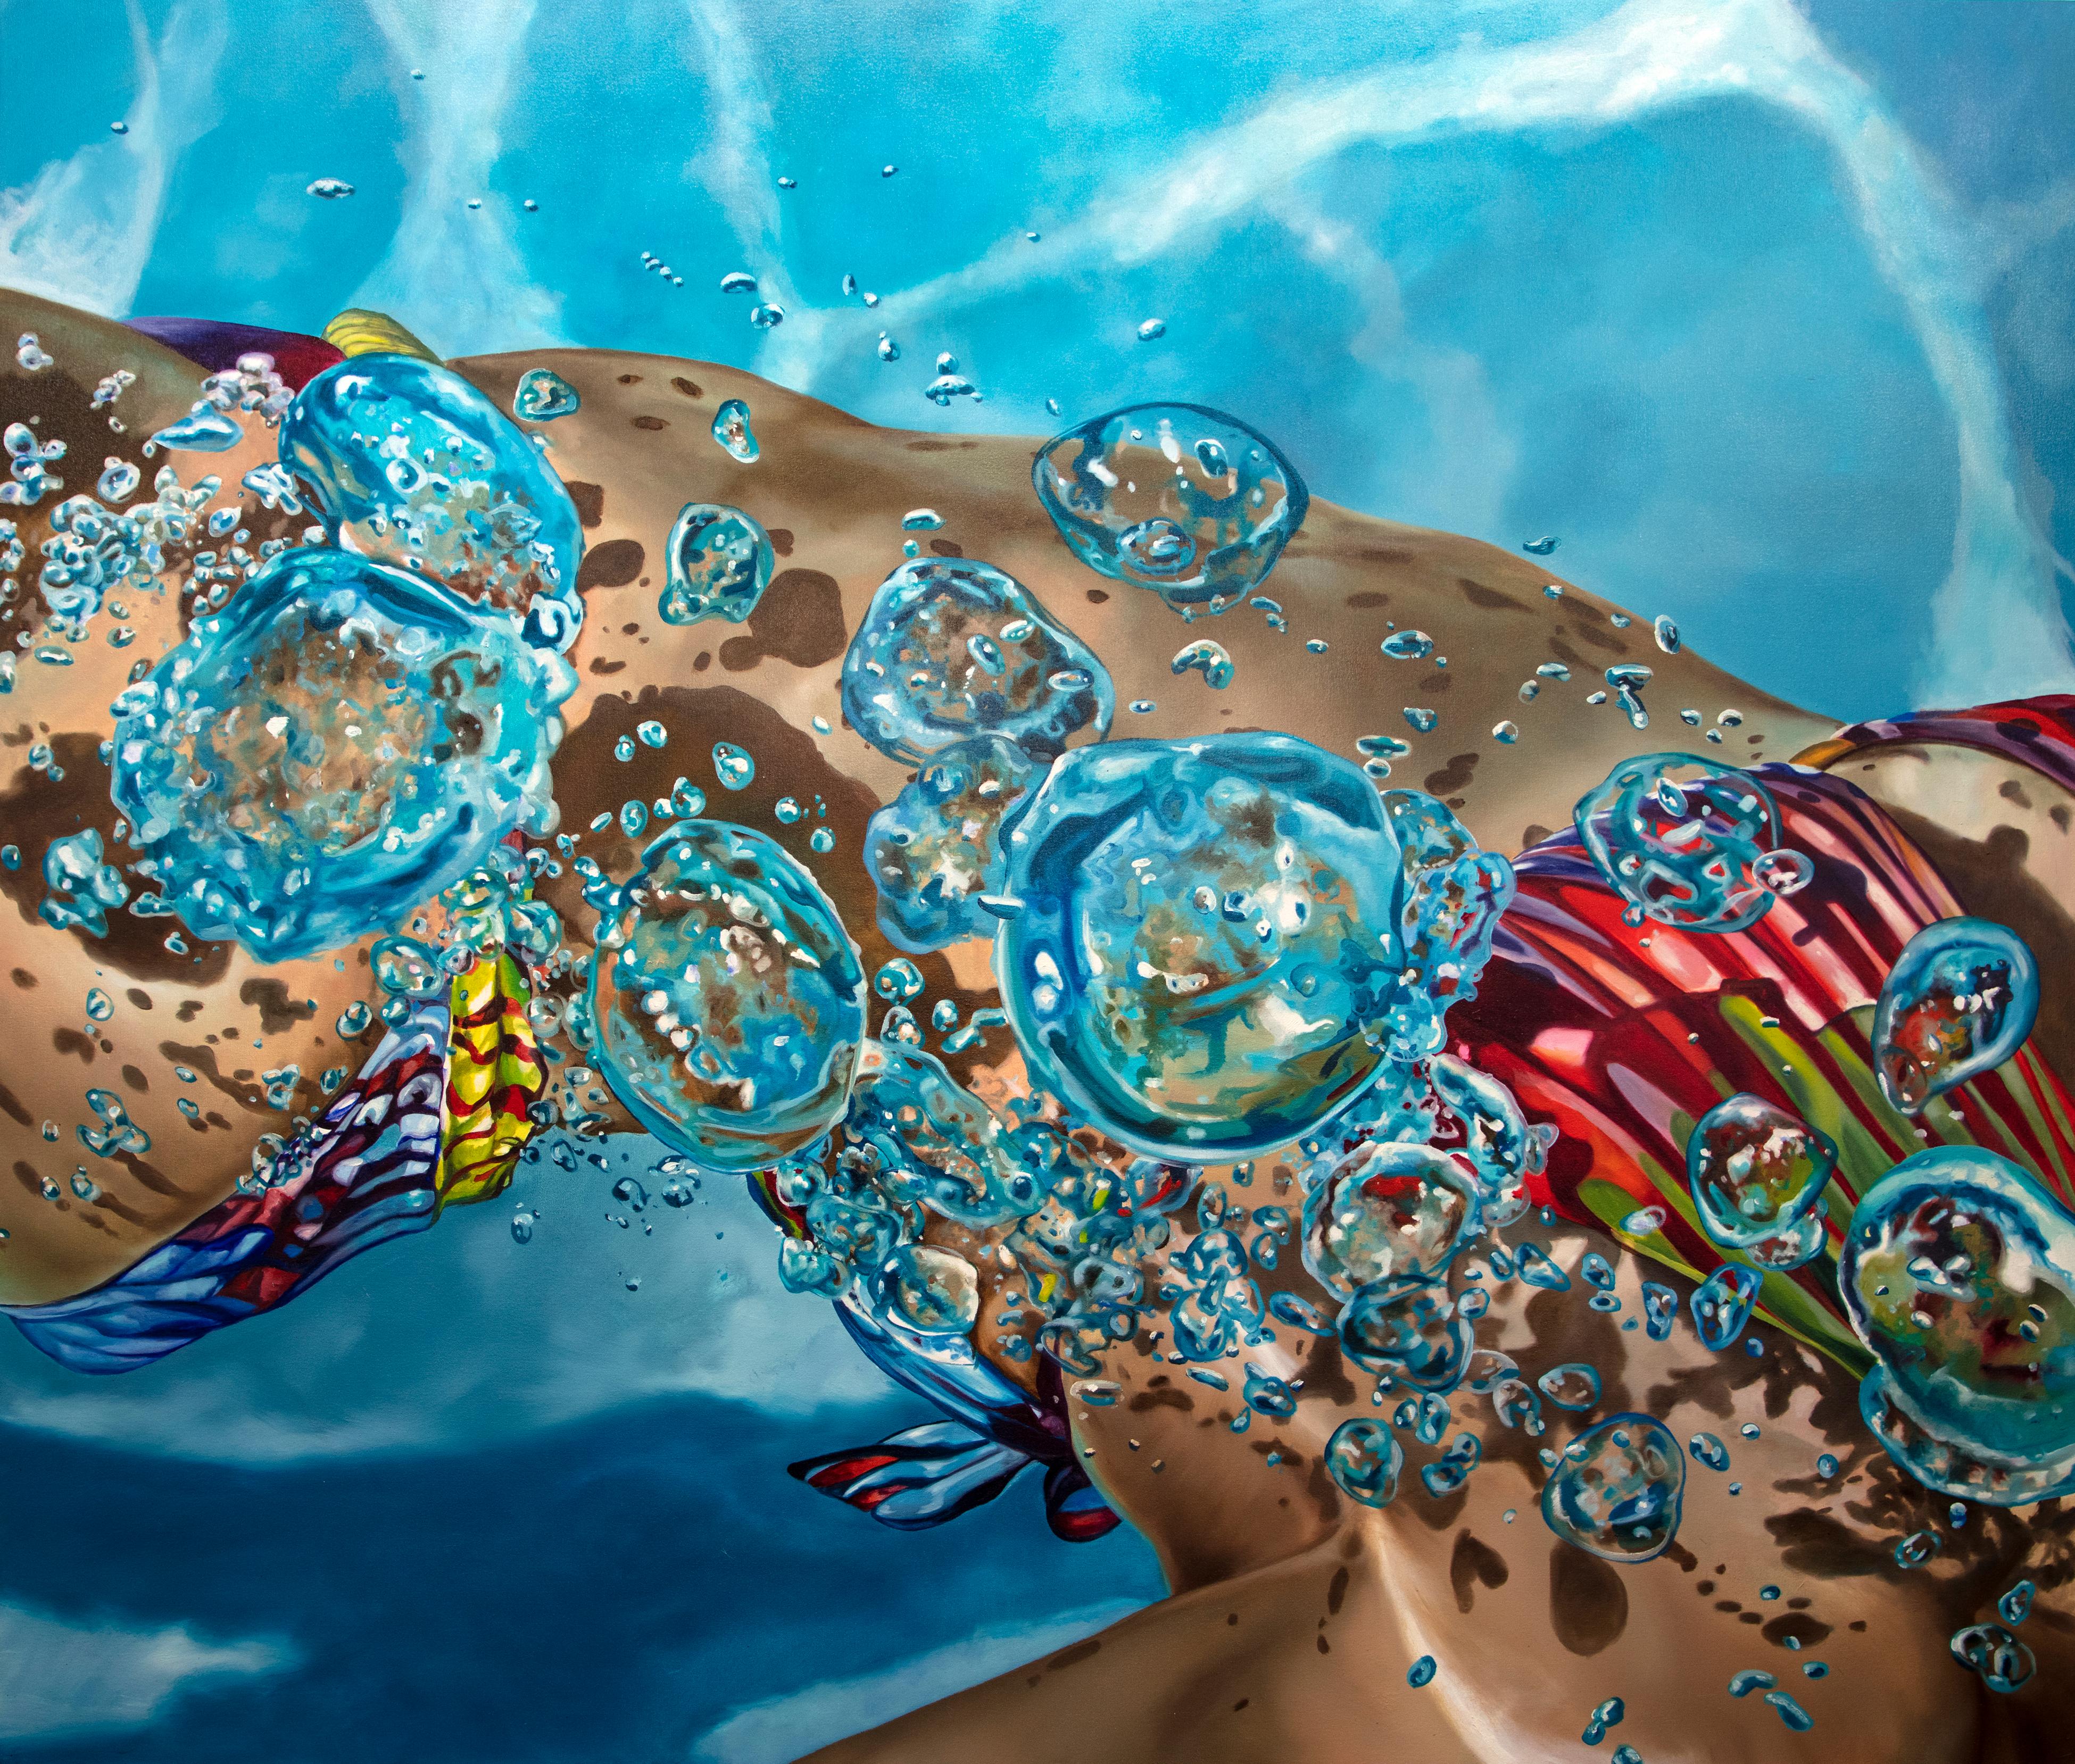 Eric Zener Figurative Painting - EPHEMERA I, Swimmer, Blue Water, Pool, Bubbles, Female Form